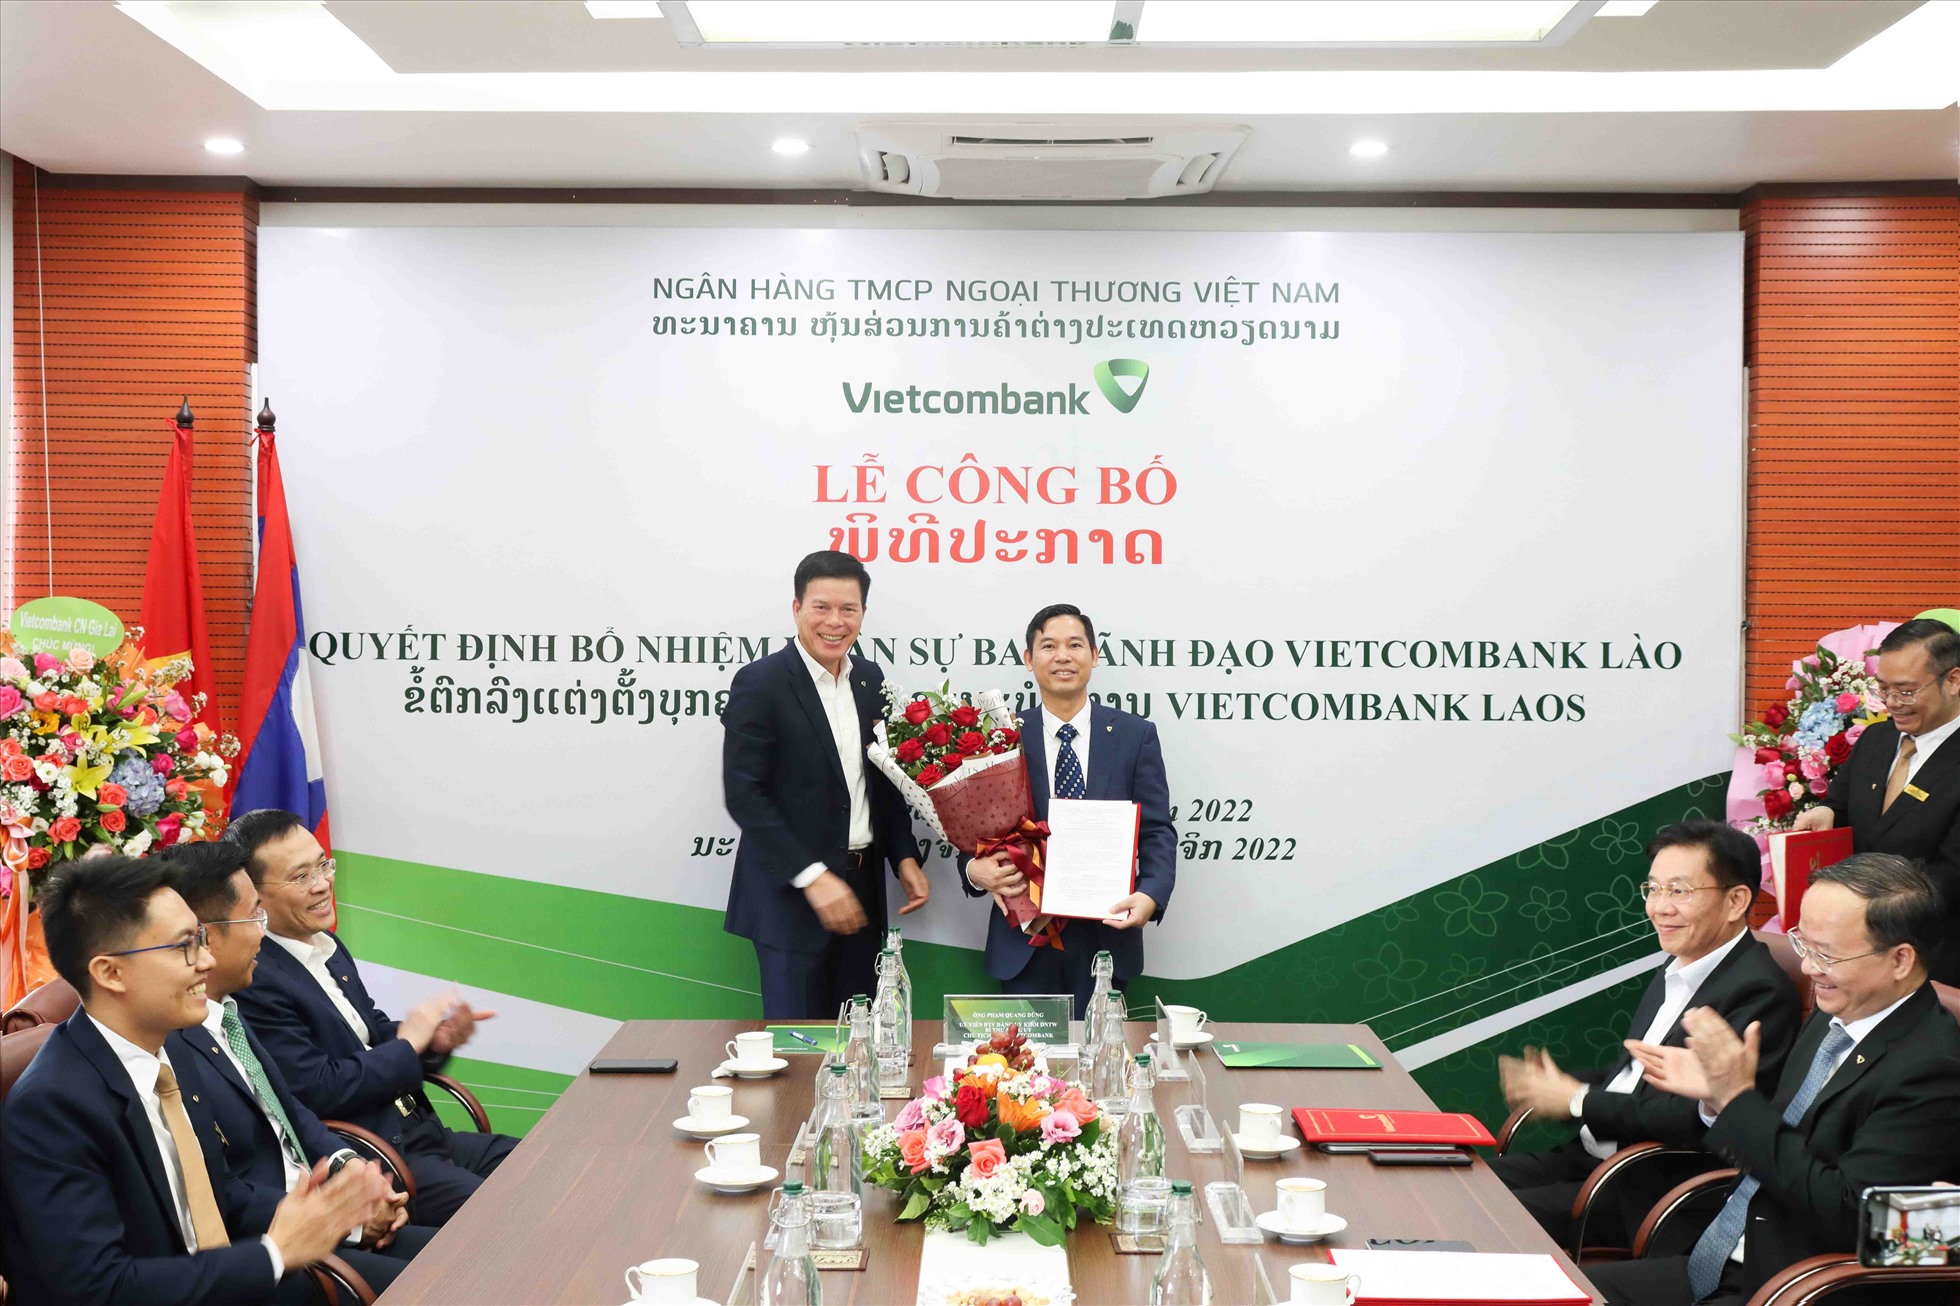 Ông Phạm Mạnh Thắng - Phó Tổng Giám đốc Vietcombank kiêm Chủ tịch HĐQT VCB Lào (bên trái) trao quyết định bổ nhiệm Tổng Giám đốc VCB Lào cho ông Nguyễn Quang Minh. Ảnh: NH